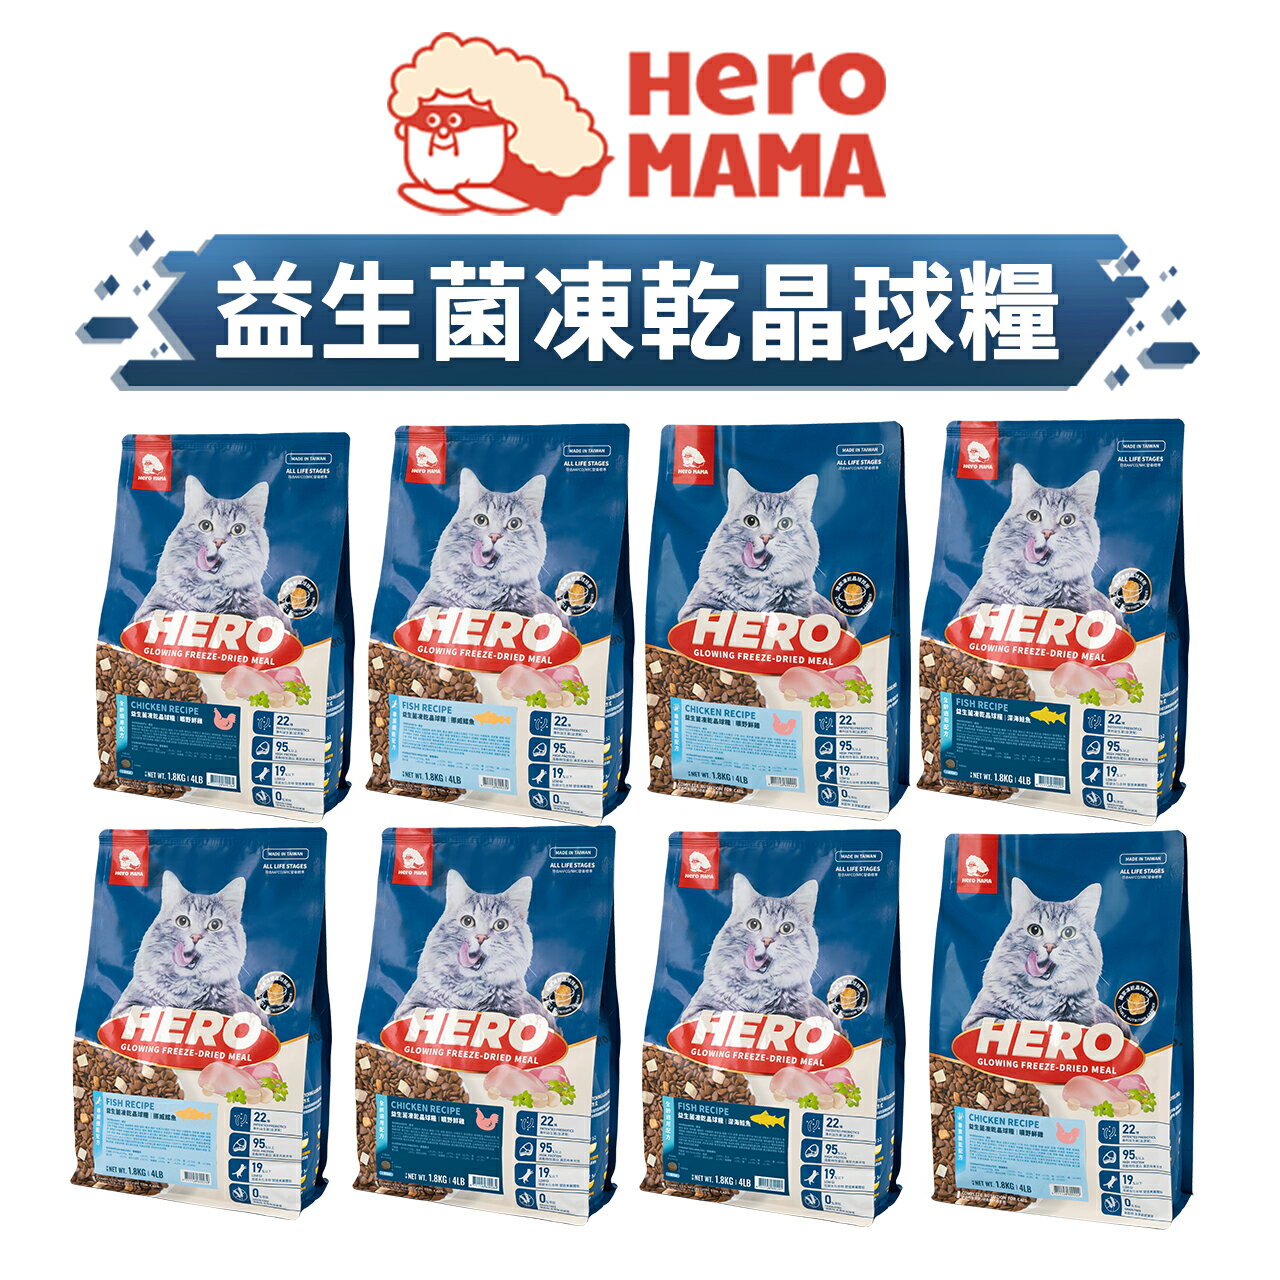 【PETMART】 HeroMama 益生菌凍乾晶球糧 貓飼料 益菌晶球 原肉凍乾 全齡配方 機能配方 400G/1.8KG